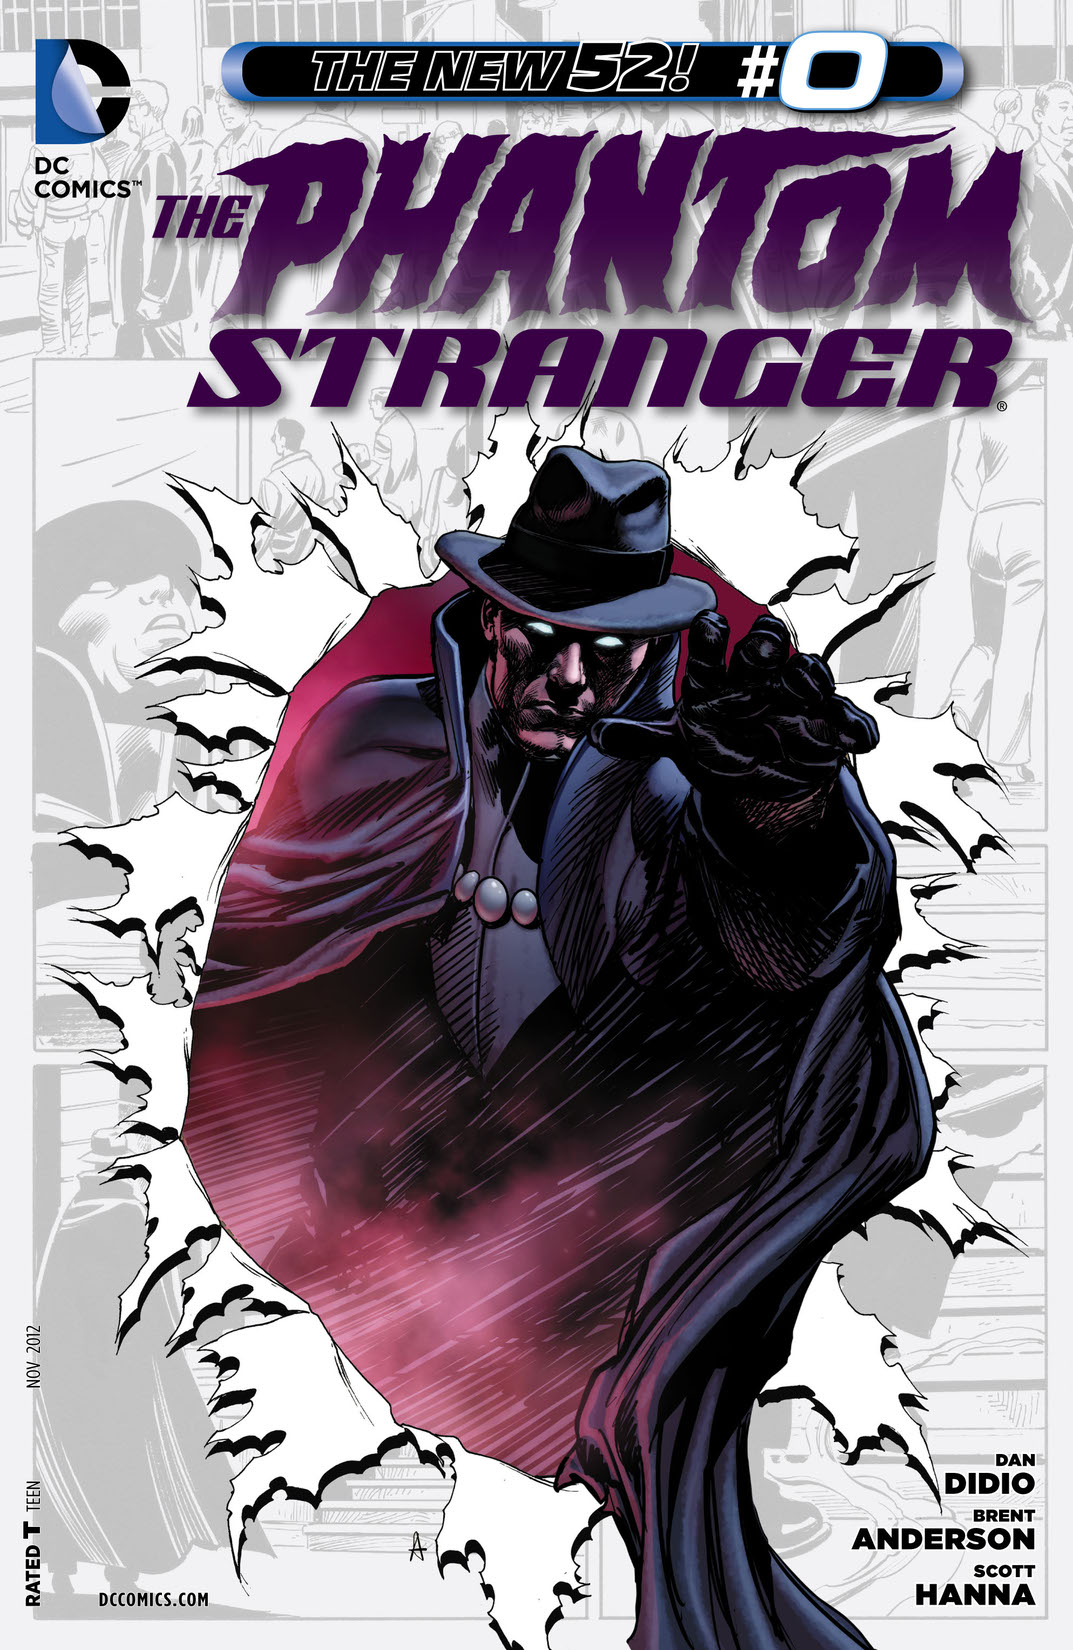 Phantom Stranger (2012-) #0 preview images